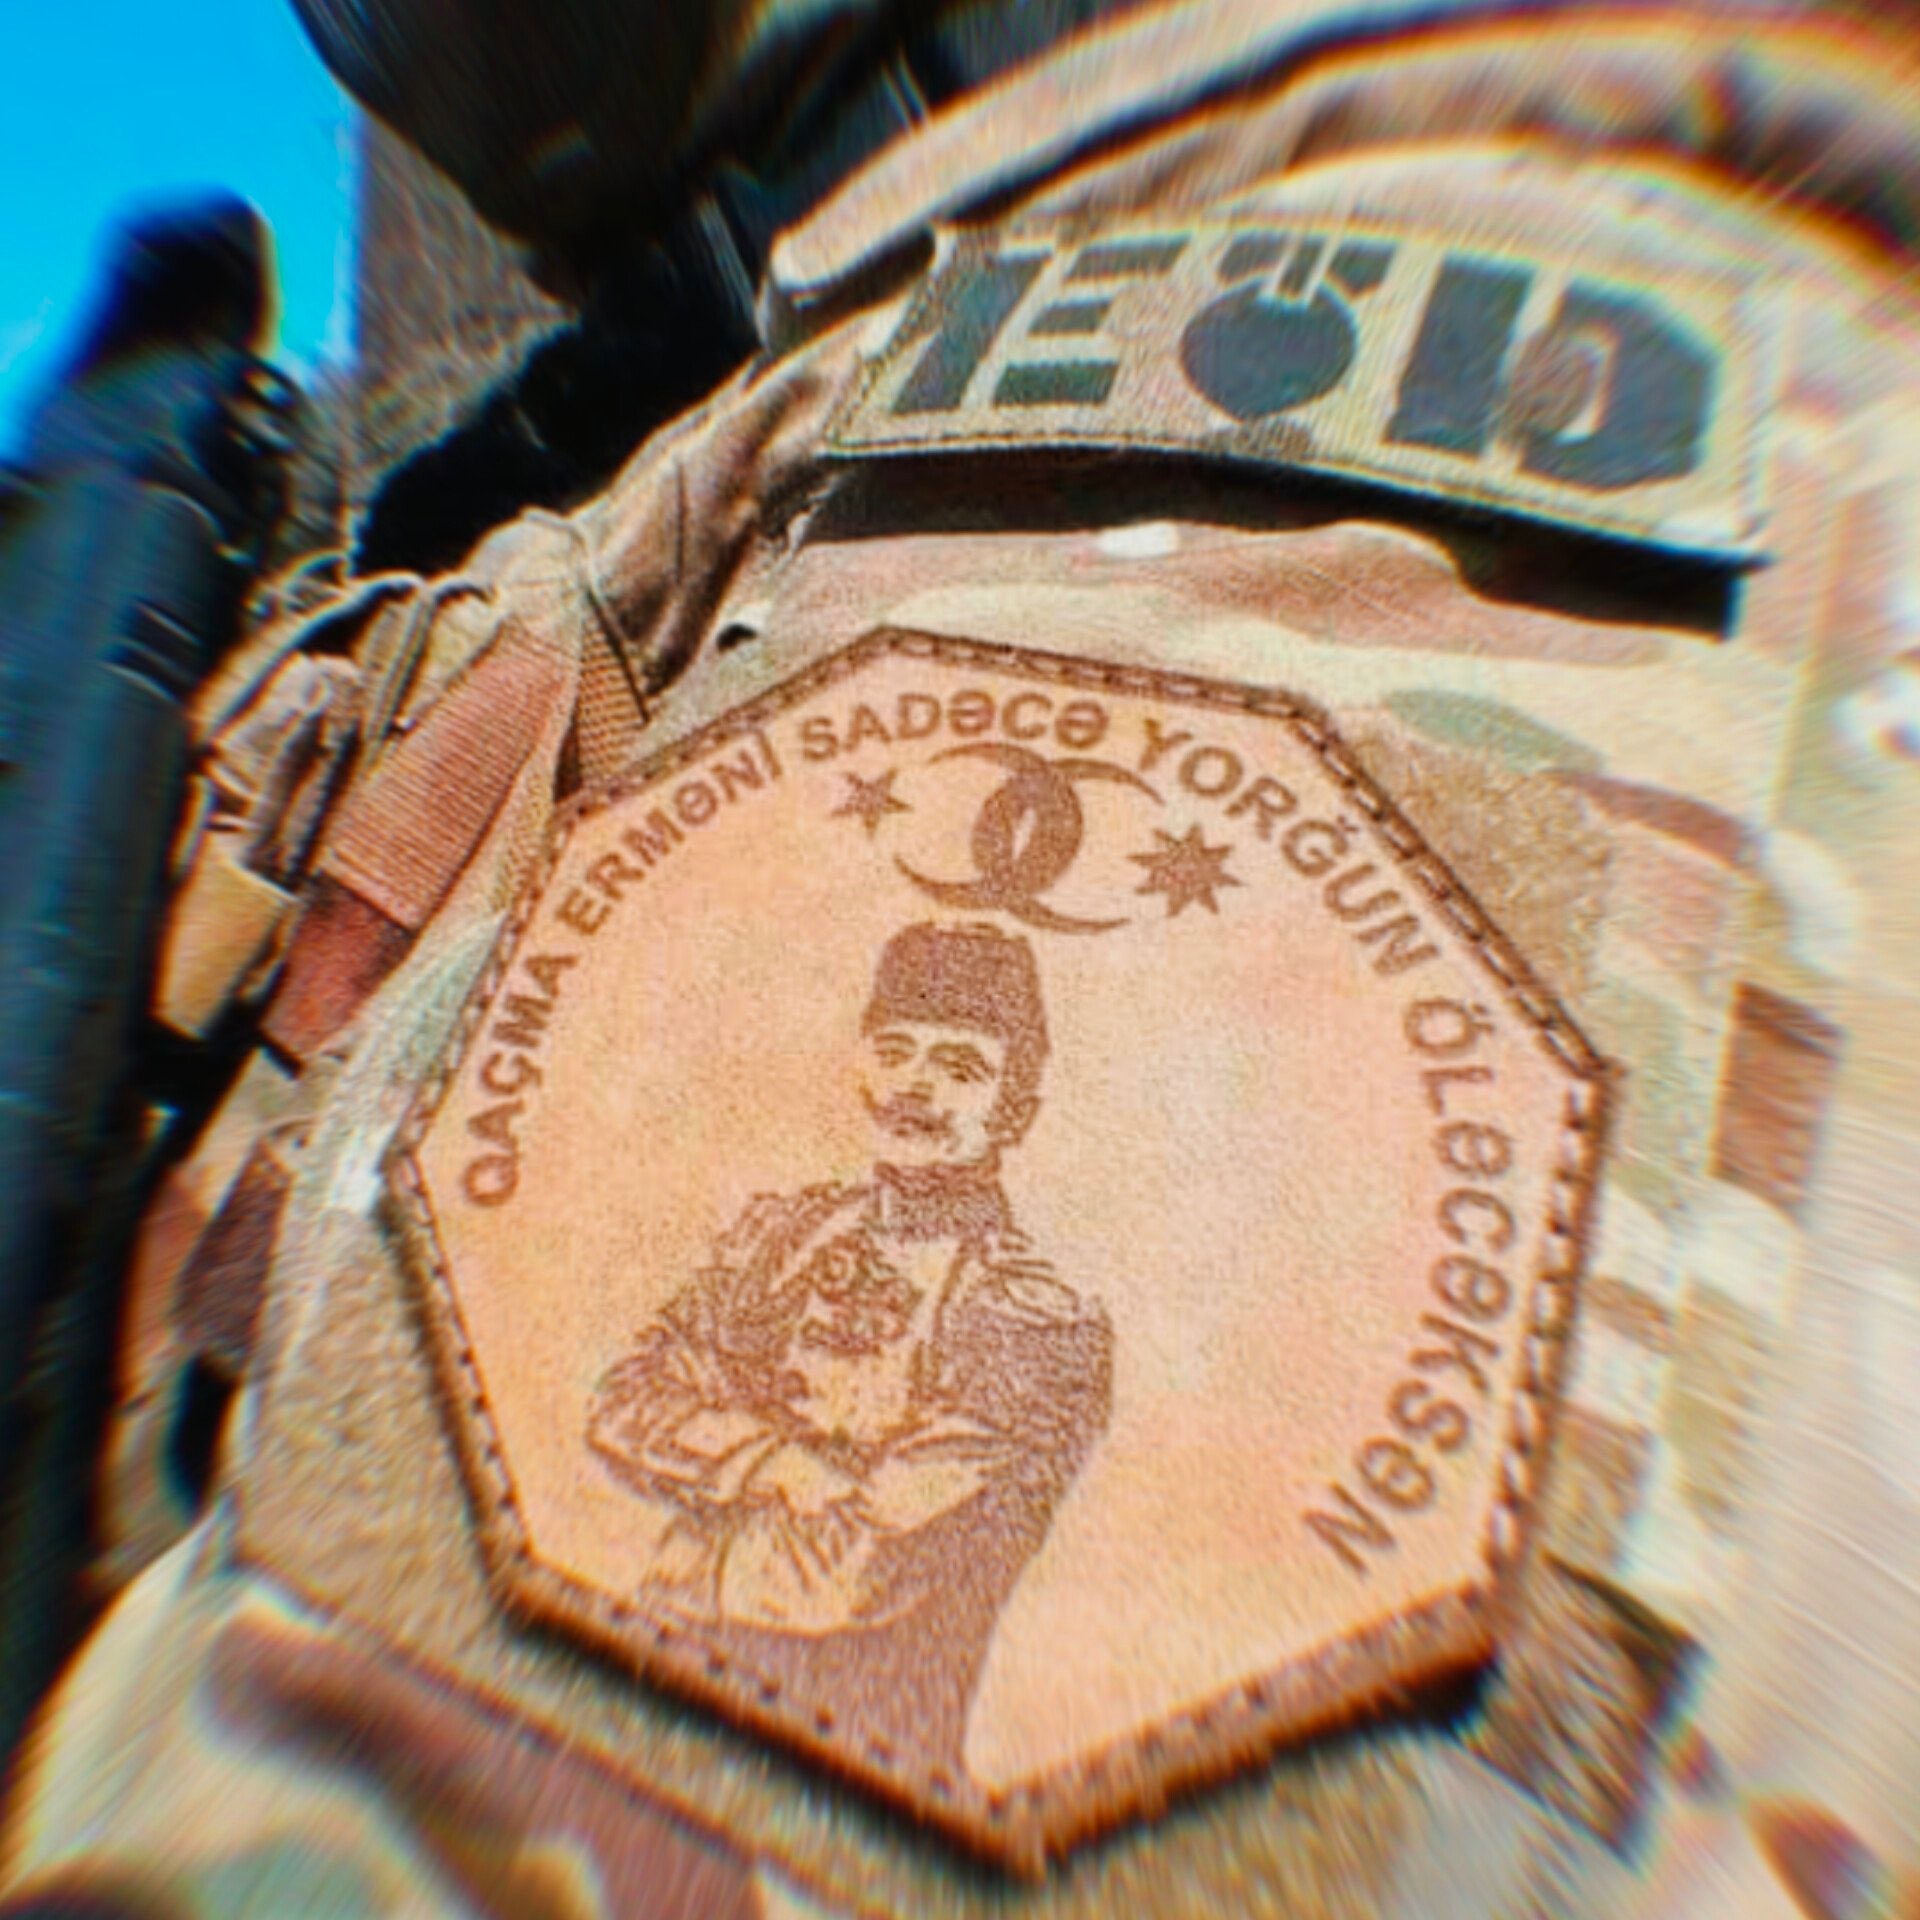 Ադրբեջանցի զինվորների թևկապին գրված է՝ «Մի փախիր, հայ, դու ուղղակի հոգնած կմեռնես». Թաներ Աքչամ